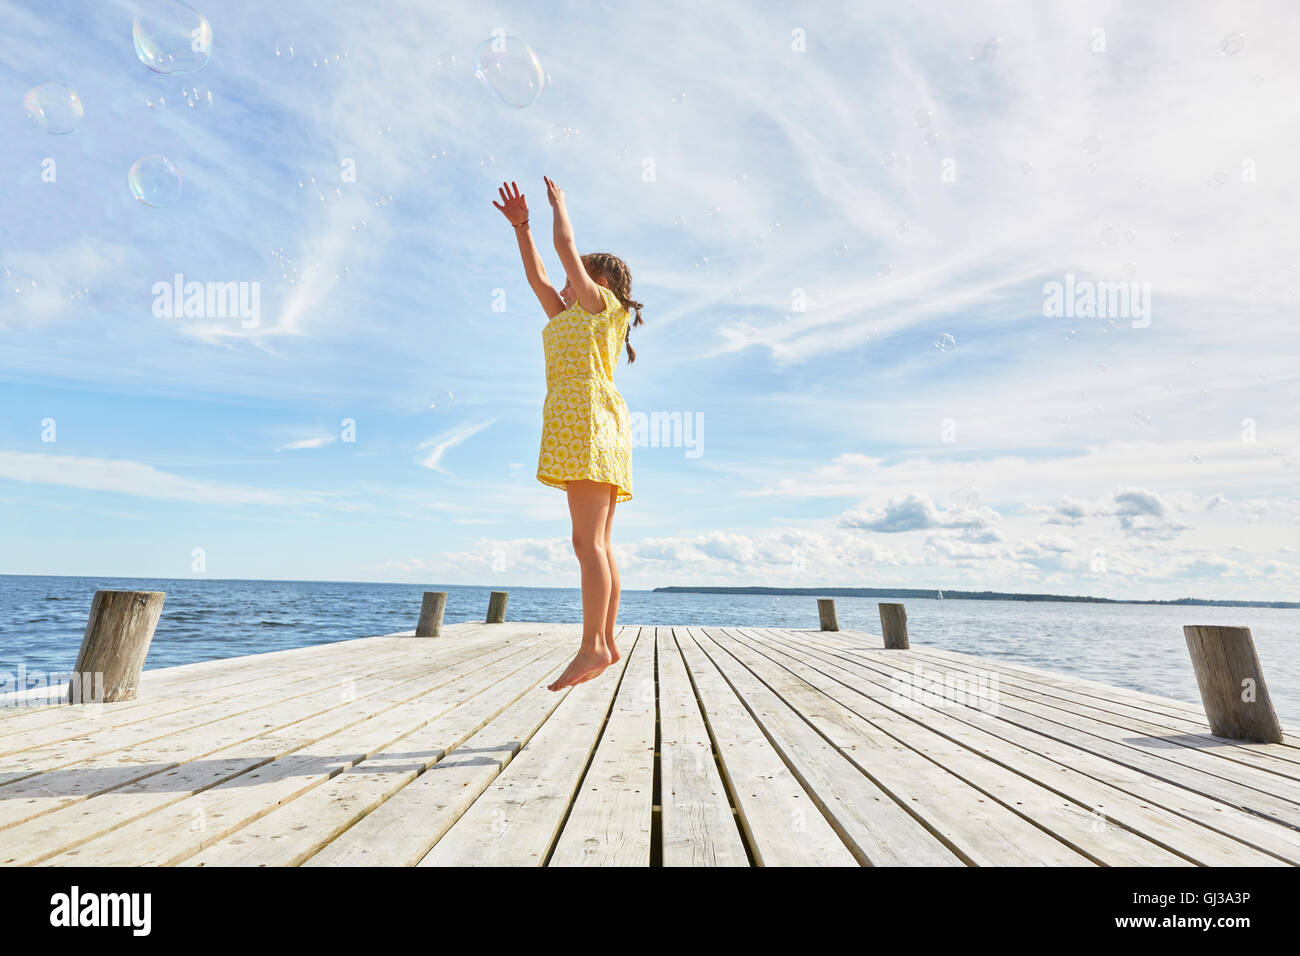 Jeune fille sur la jetée en bois, sauter pour atteindre bubbles Banque D'Images